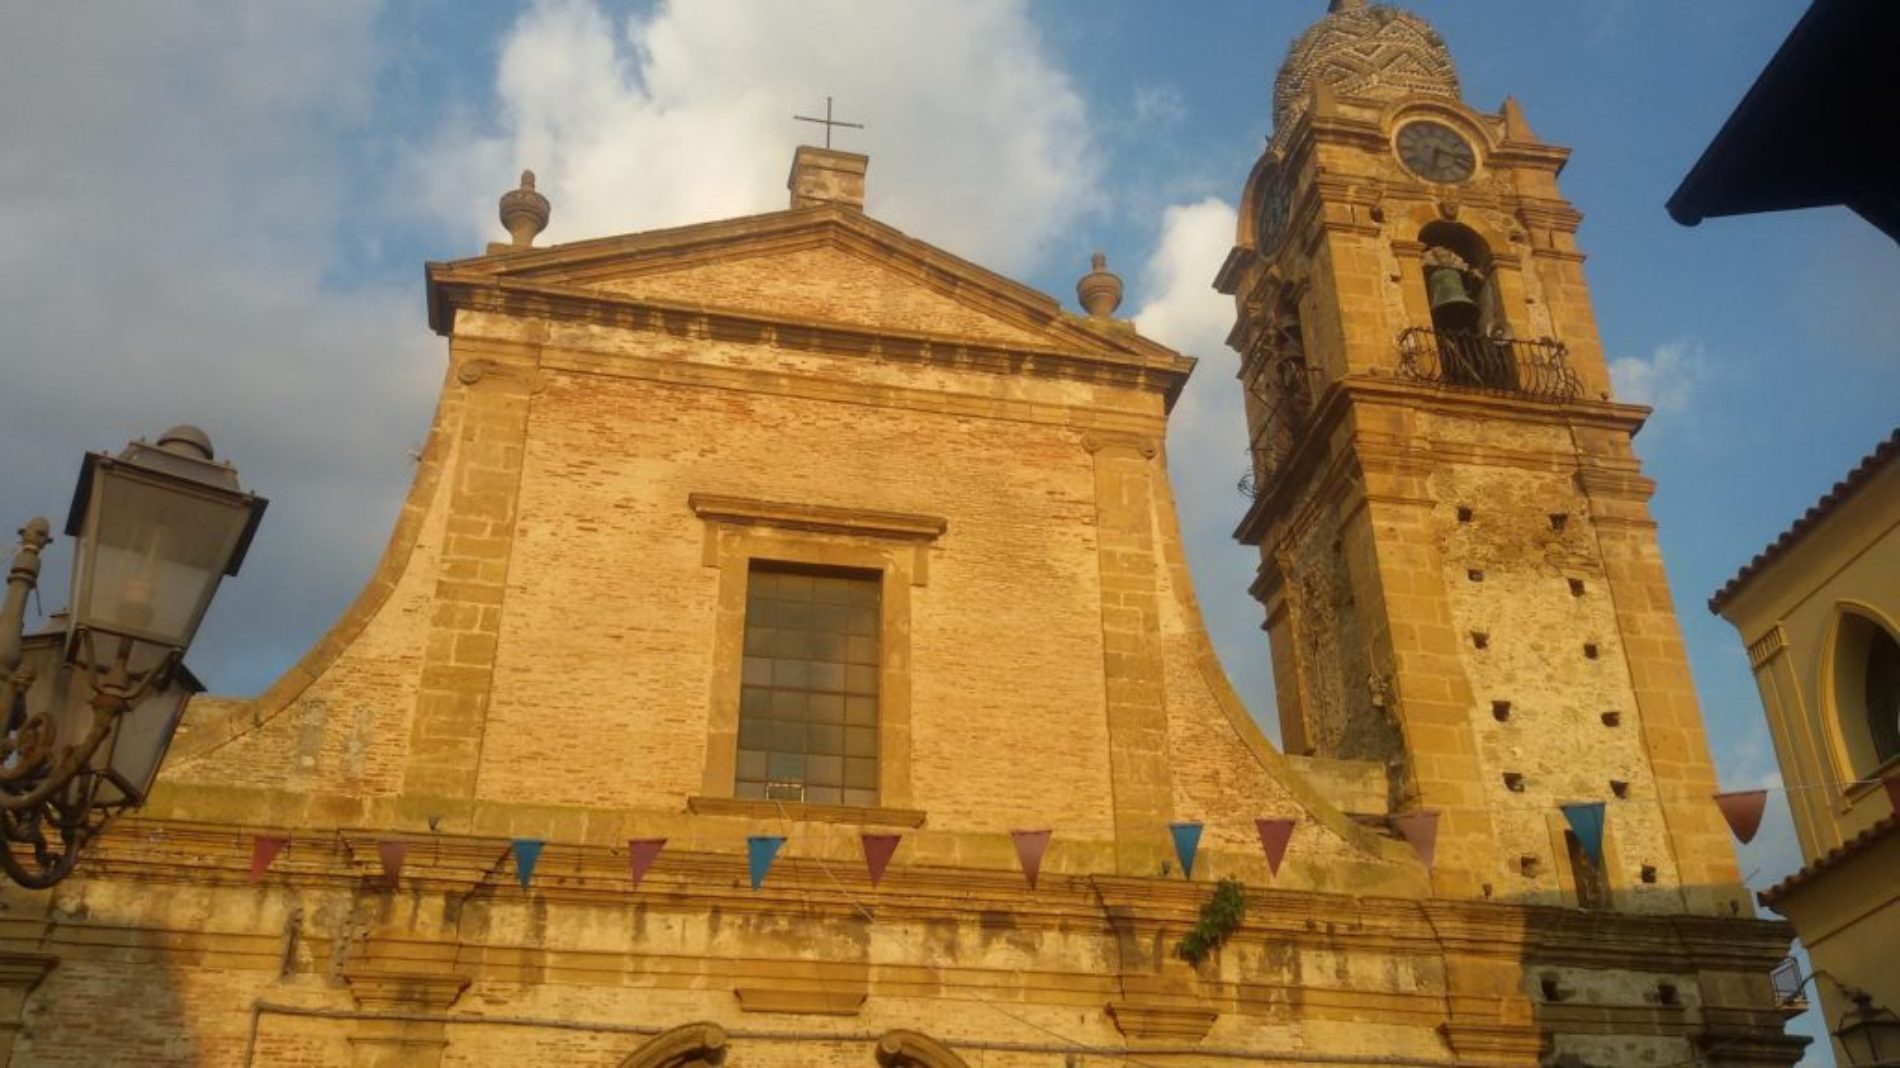 Barrafranca. Domenica delle Palme, Santa Messa chiesa Madre